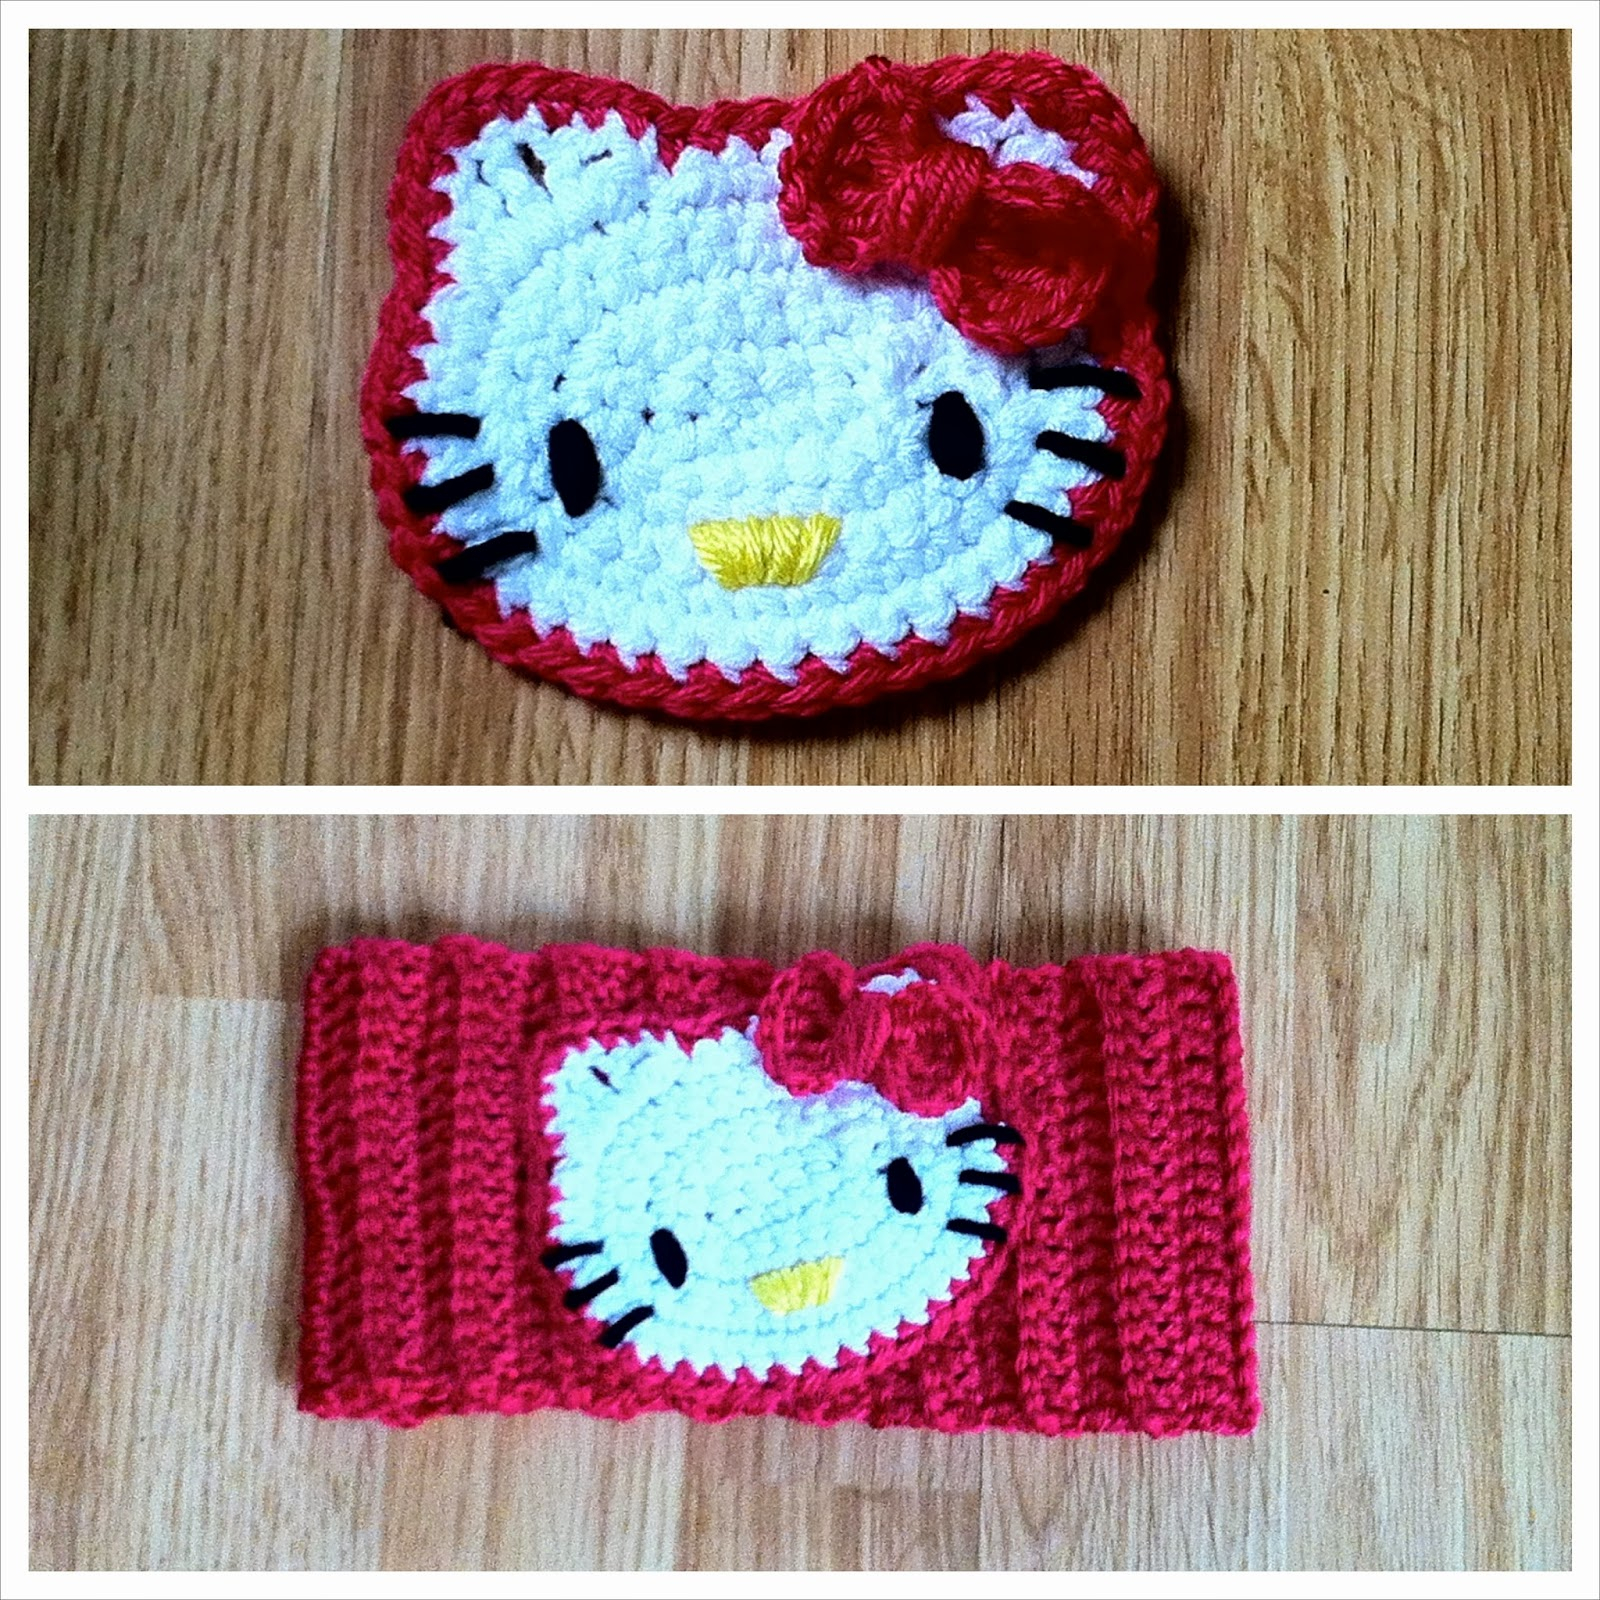 Crochet Hello Kitty Bow Pattern Hello Kitty Crochet Headband The Way I Crochet